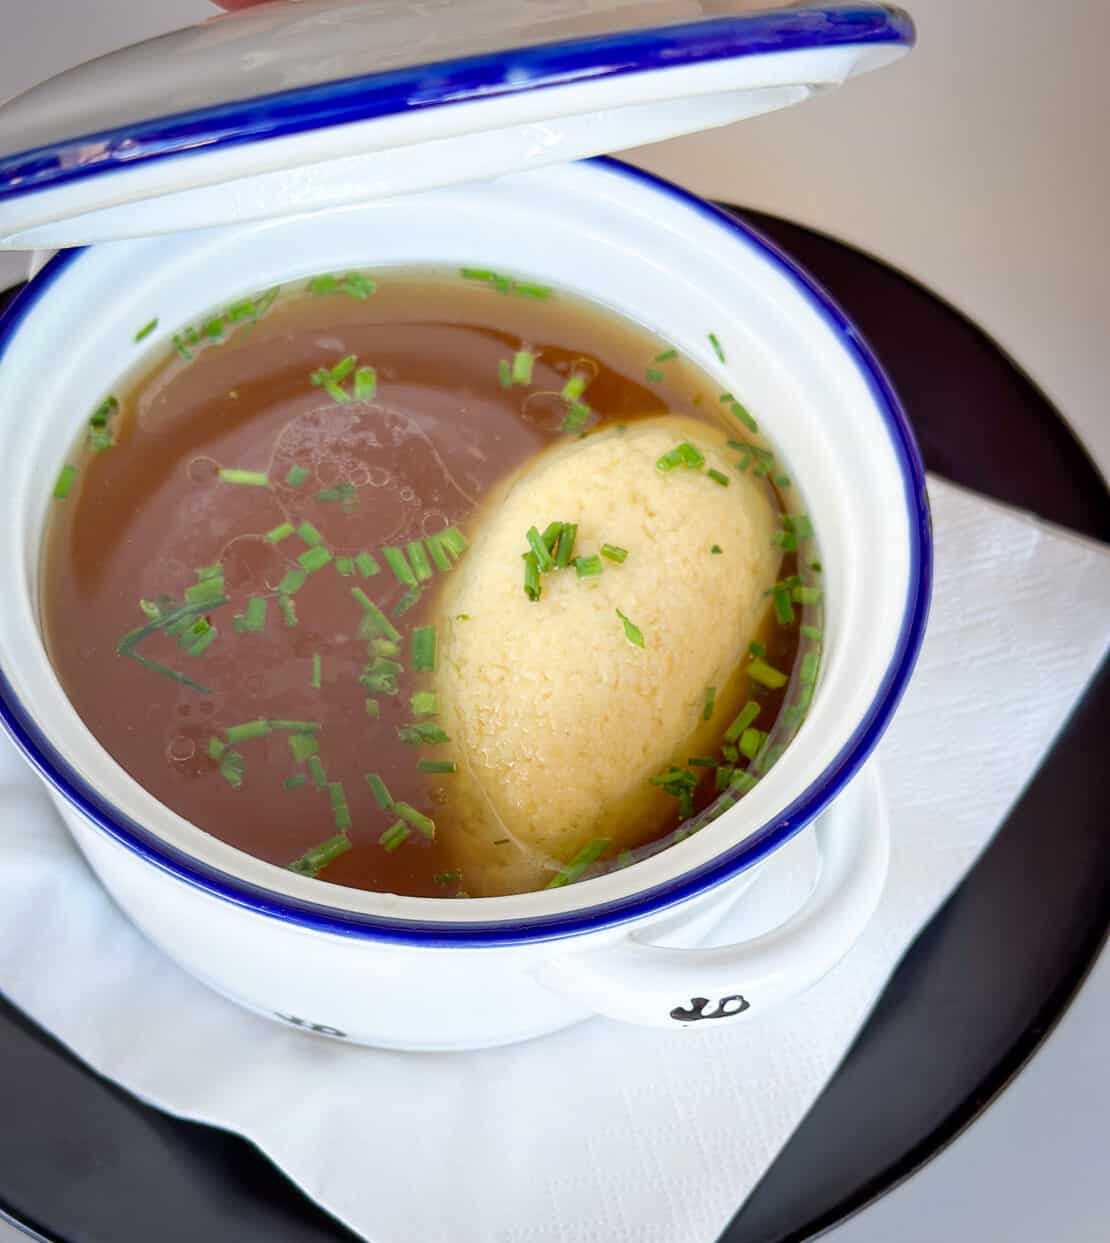 Semolina dumpling in a broth soup in a white dish in Austria